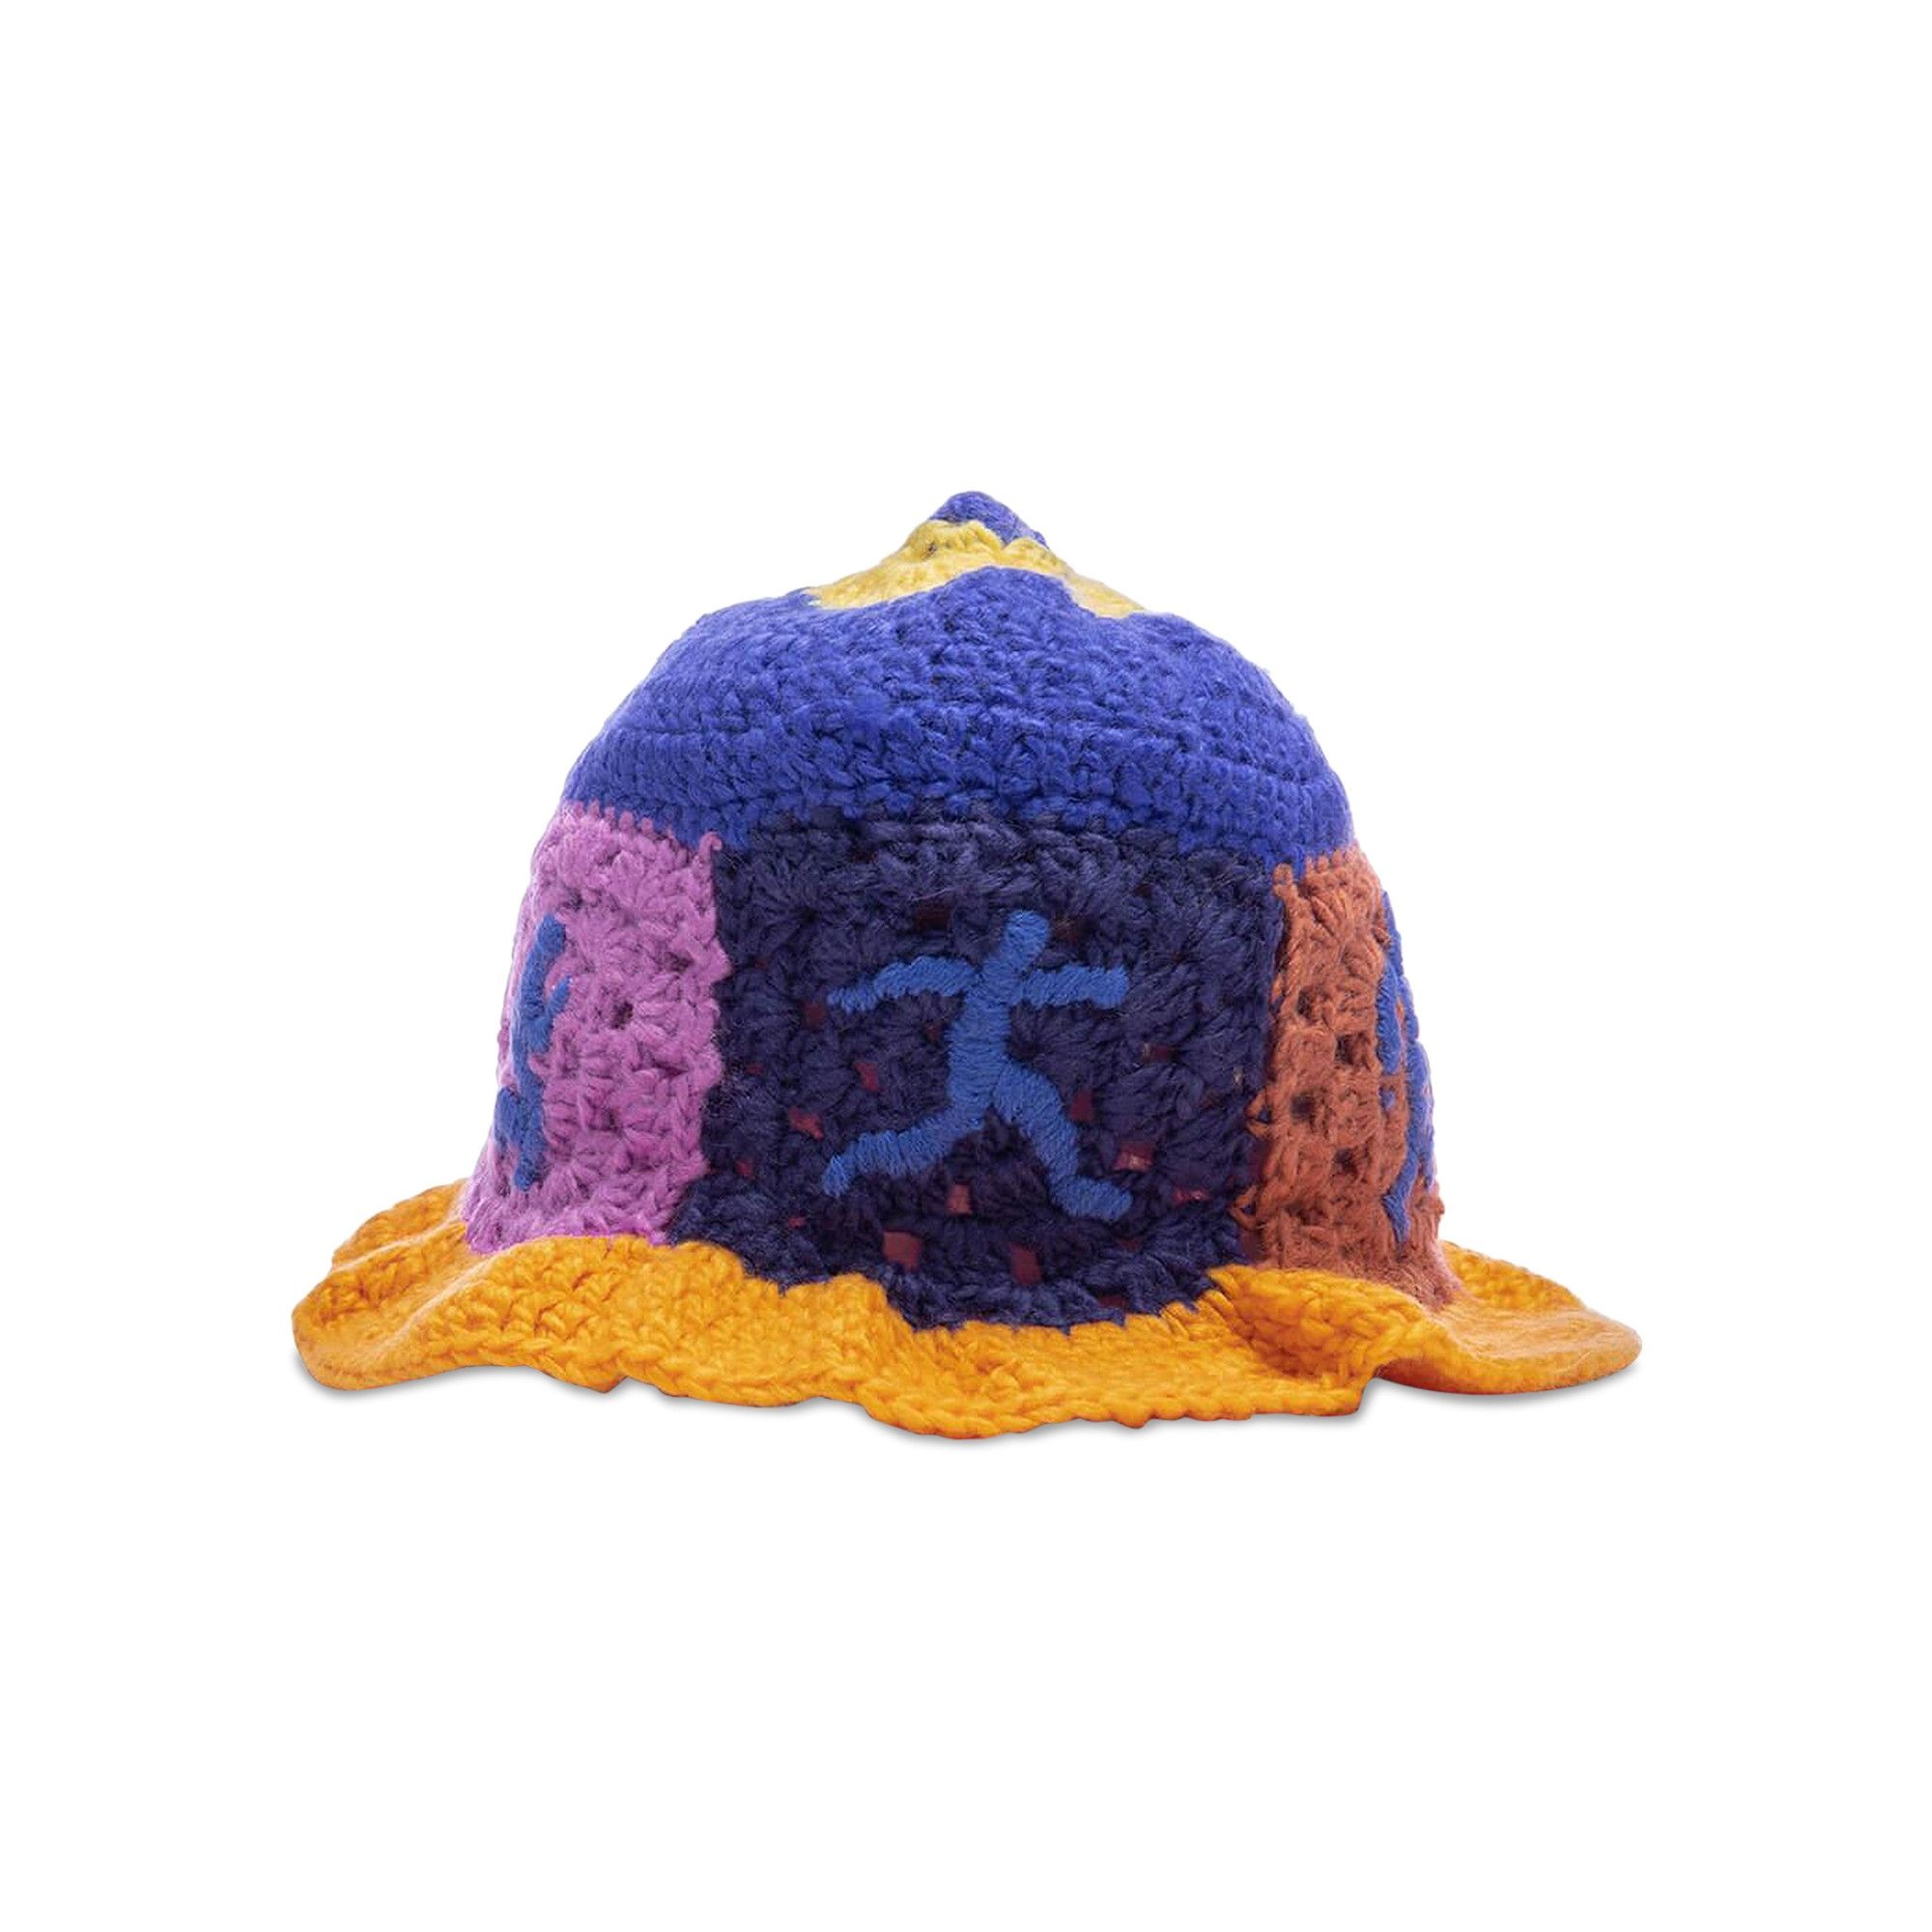 KidSuper Running Man Crochet 'Multicolor' - 1